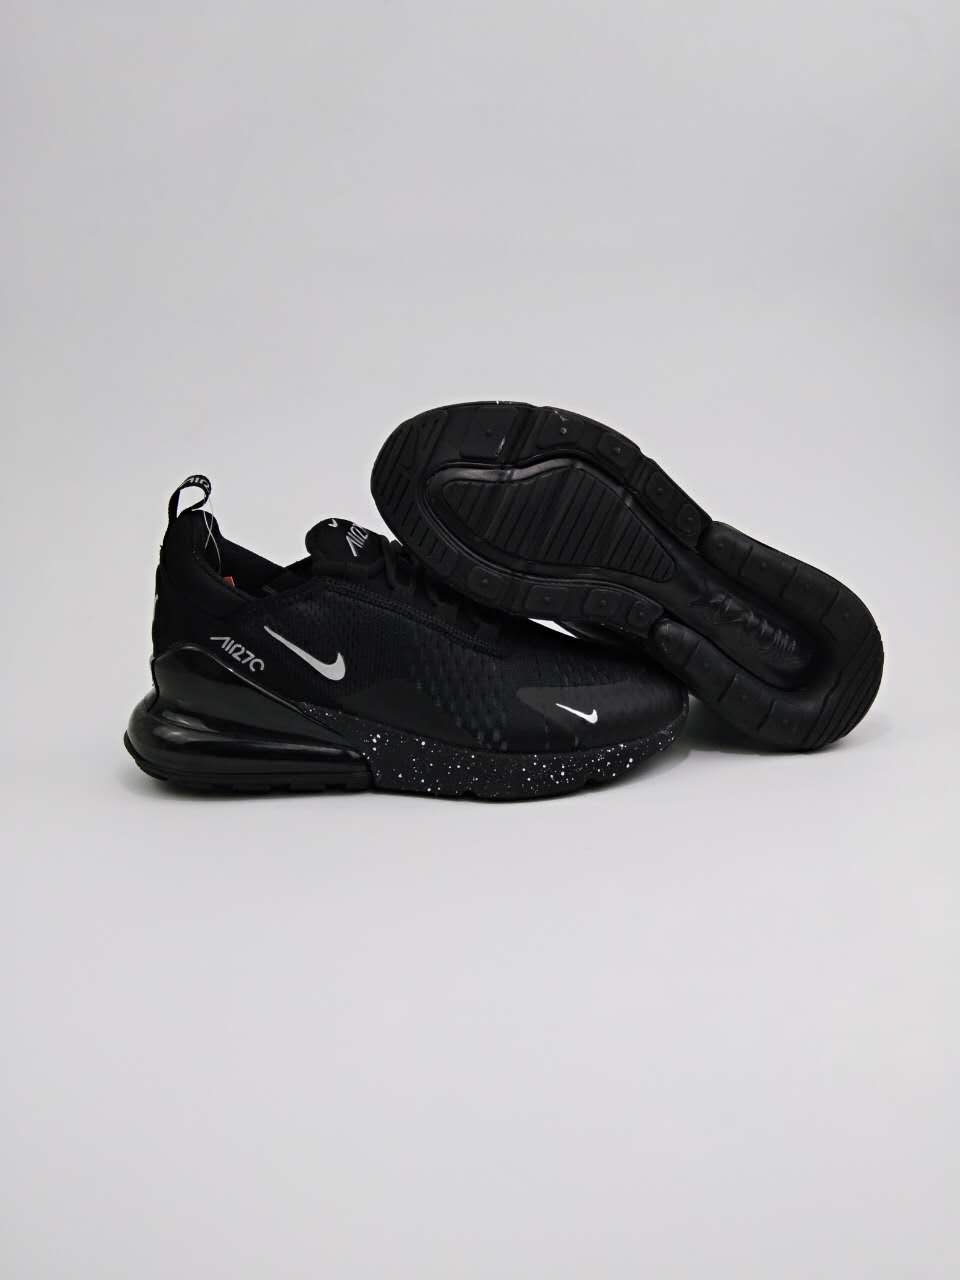 New Nike Air Max Flair 270 Nano All Black Shoes